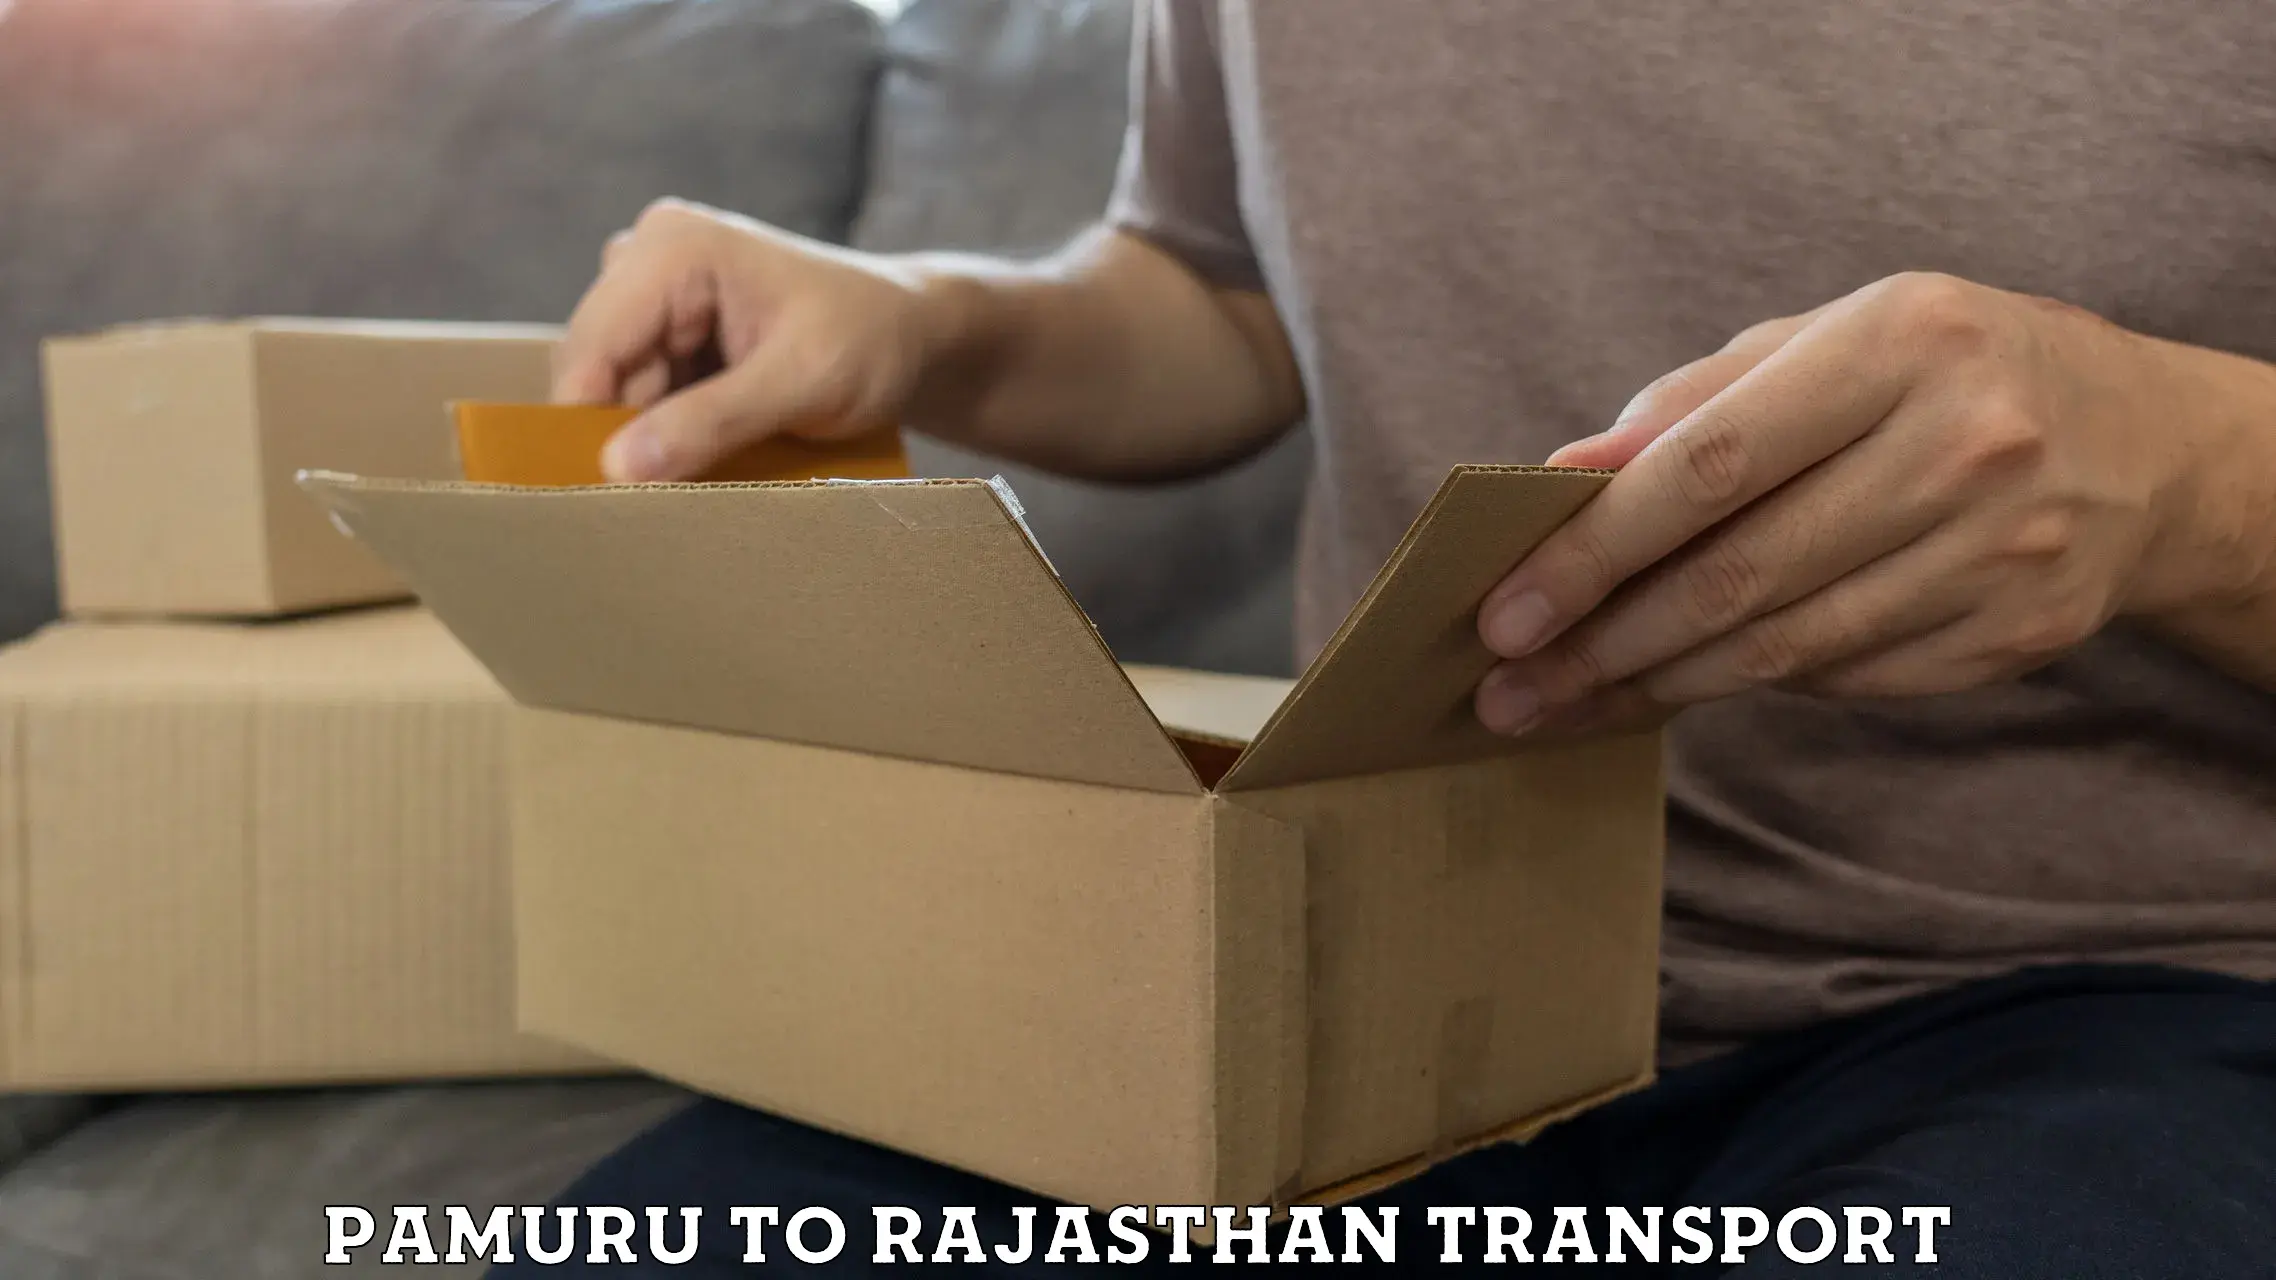 Online transport service Pamuru to Rajasthan